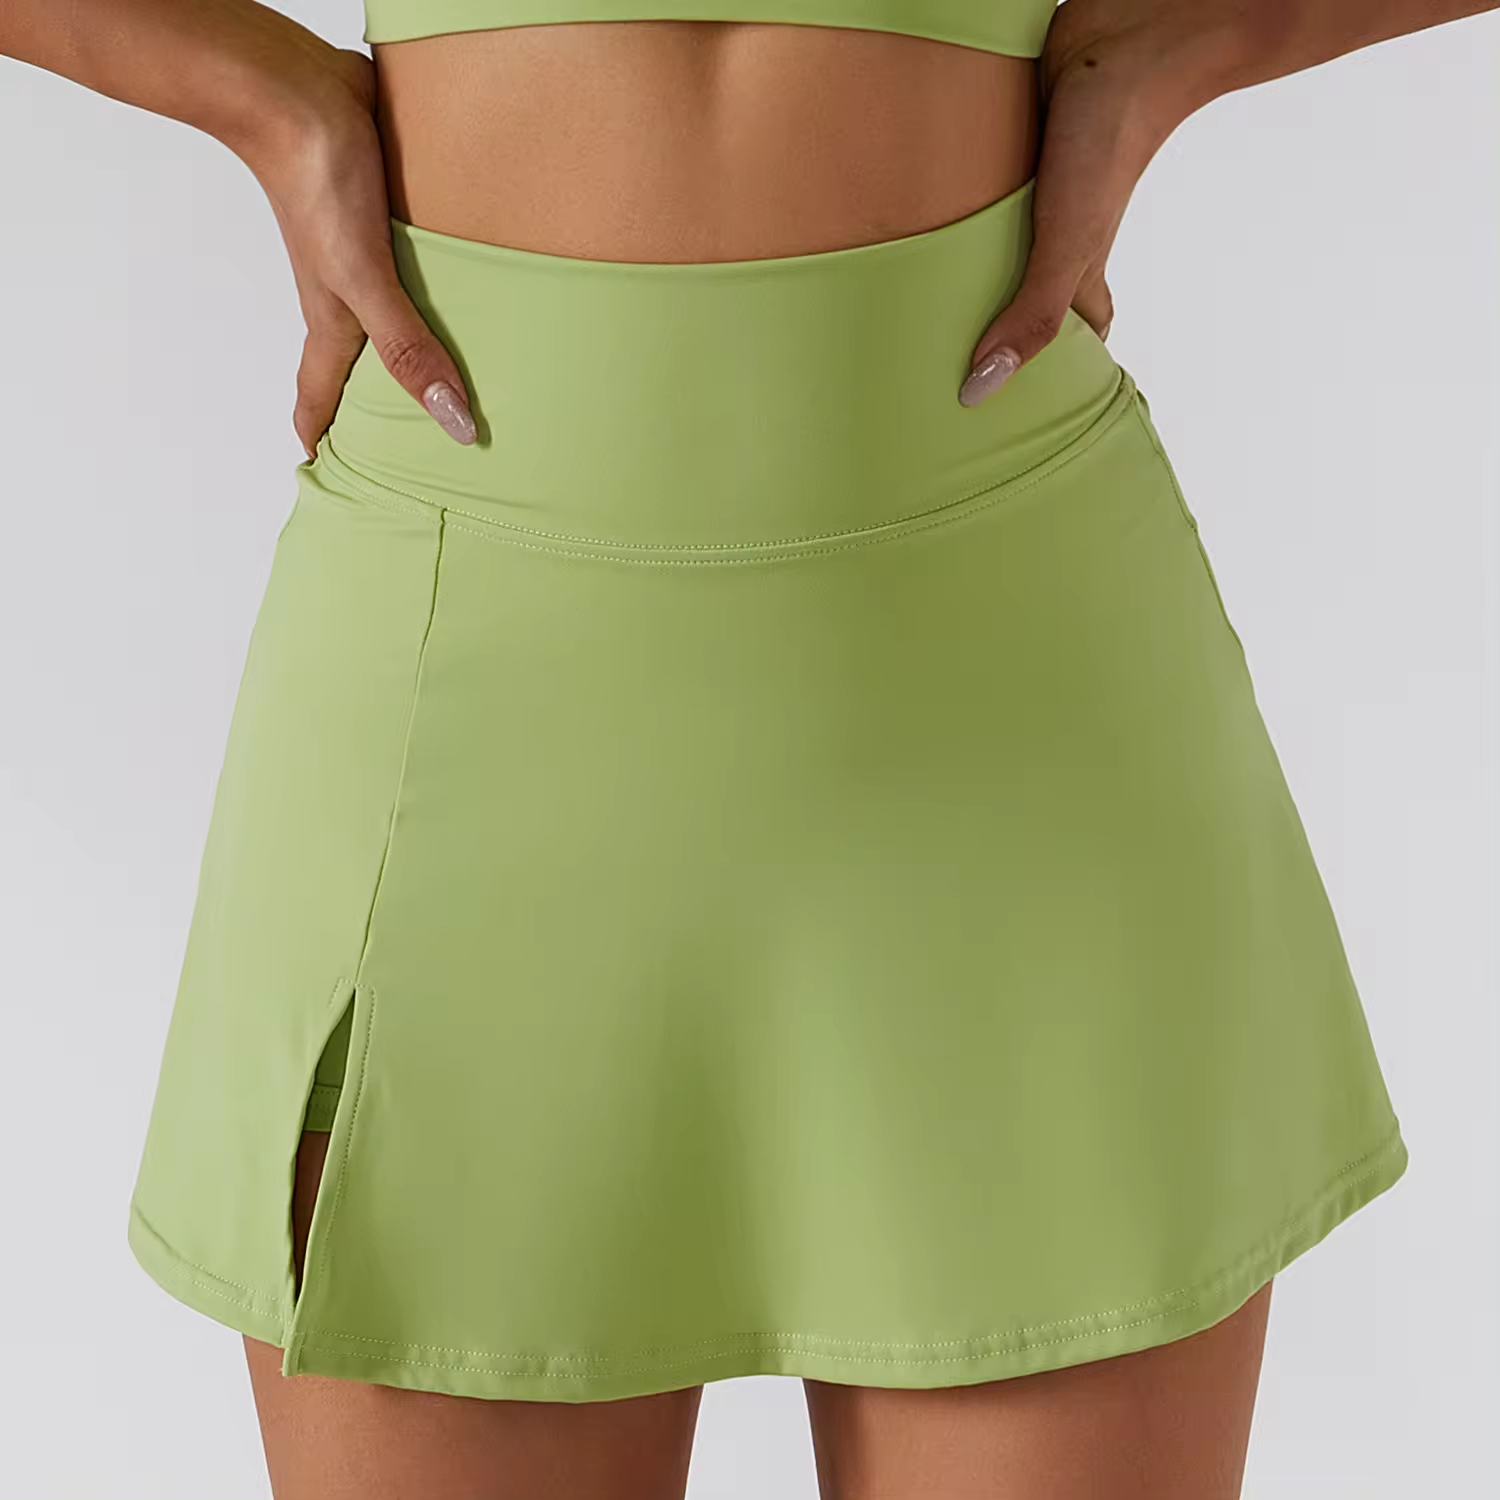 SAM Power Yoga Skirt